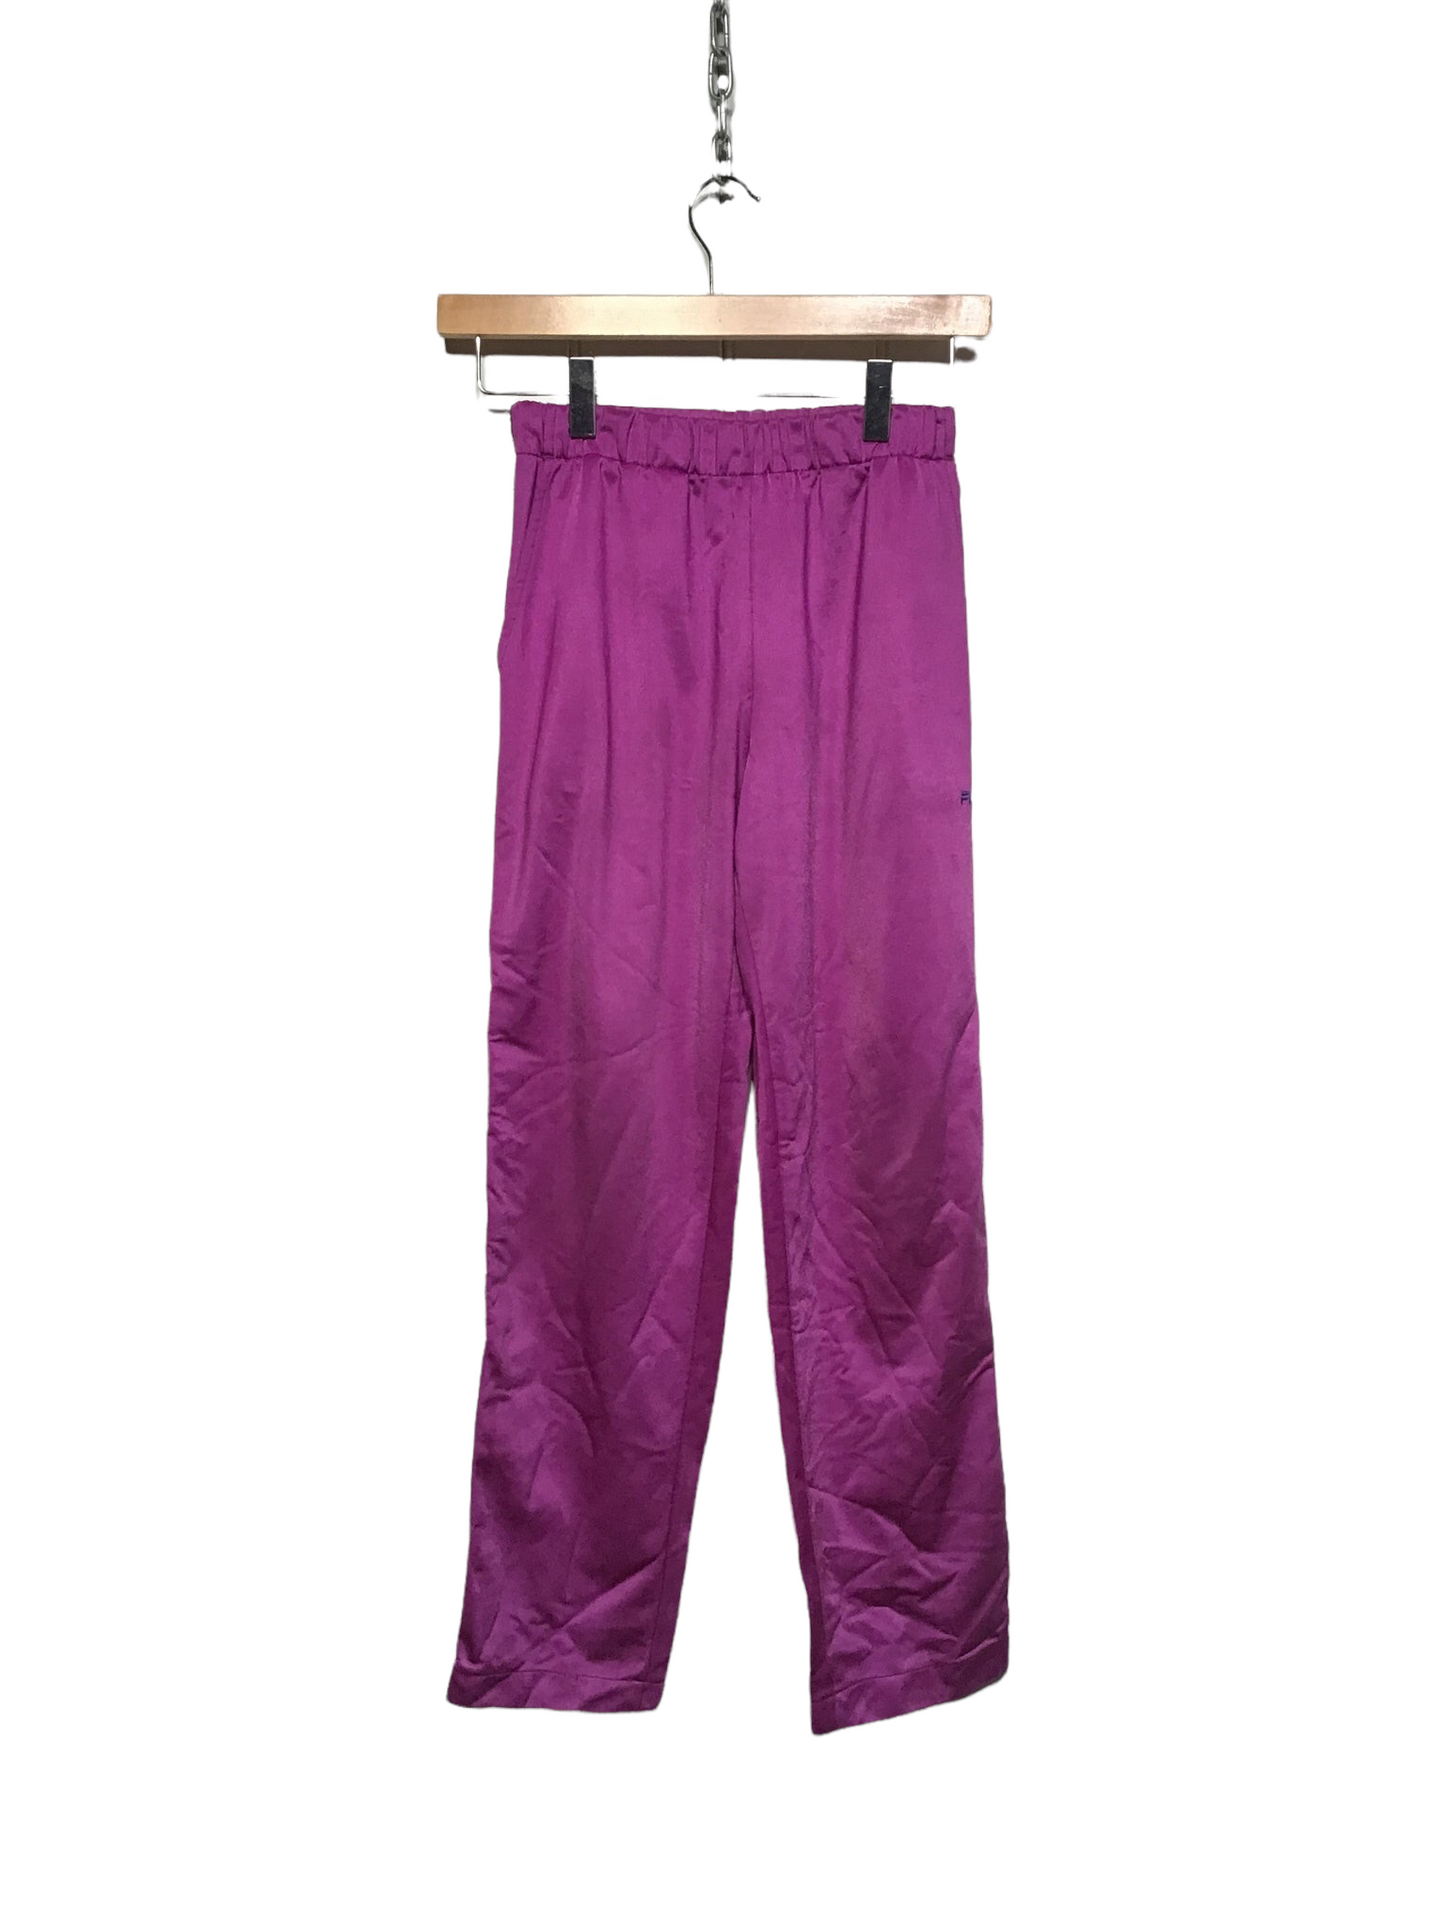 Fila Sweatpants (Size XXS)